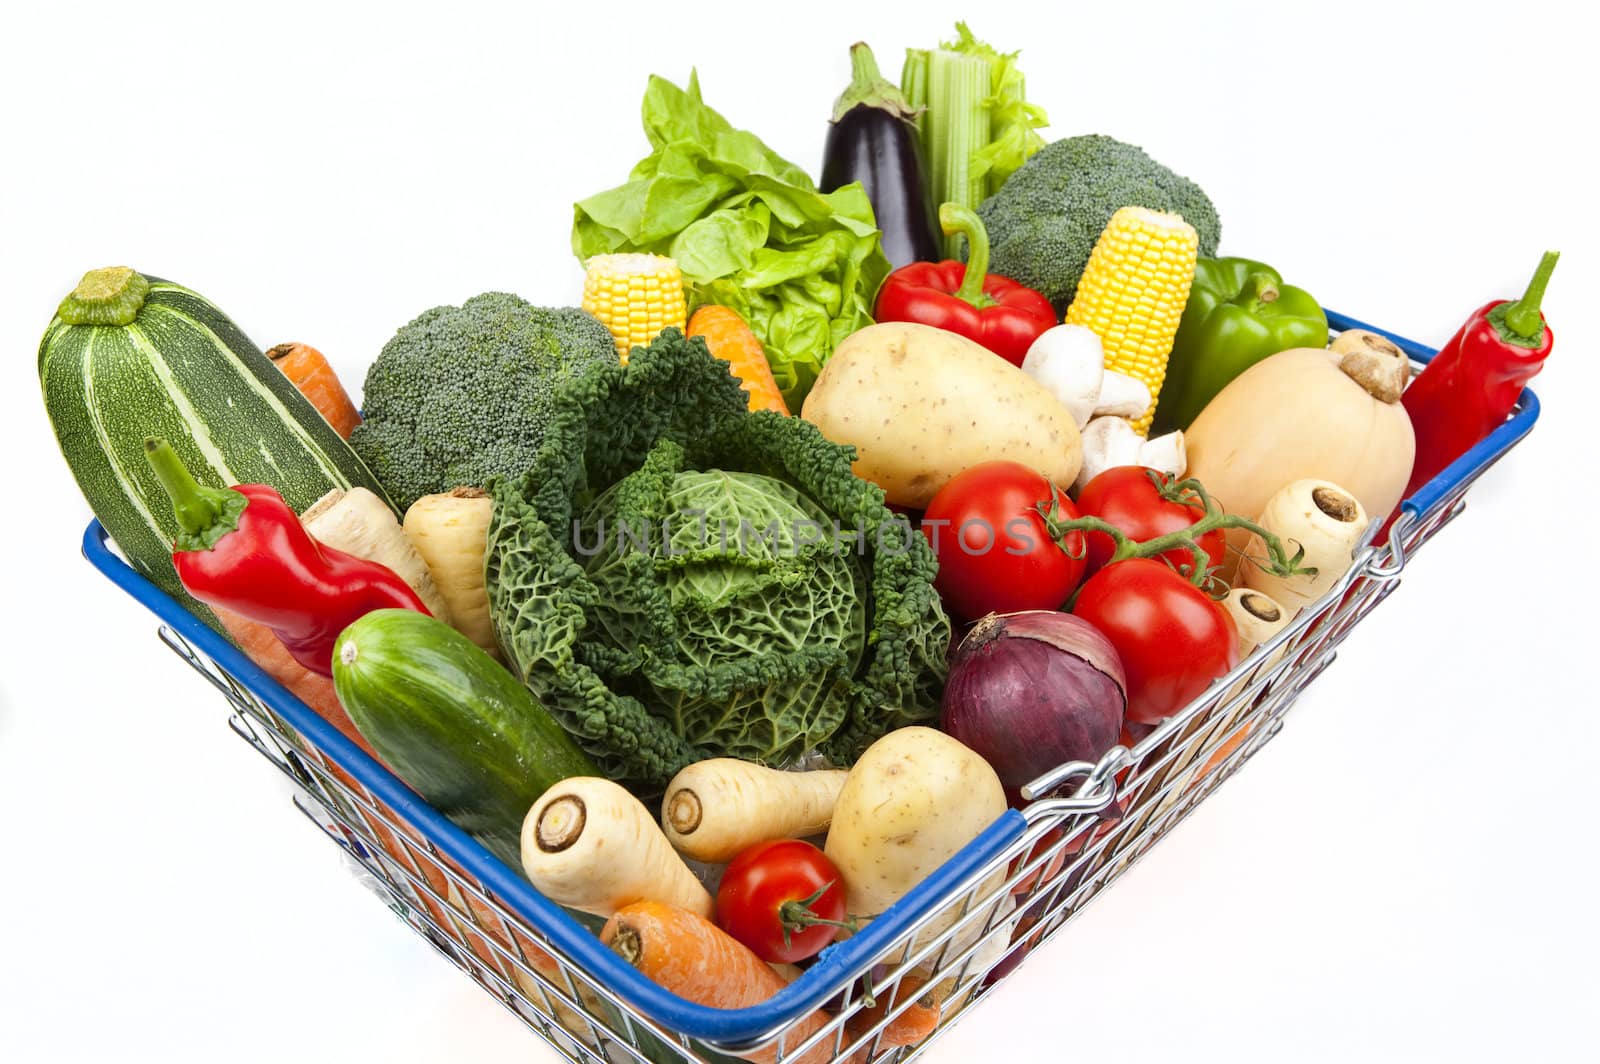 Shopping Basket Full of Vegetables by chrisdorney